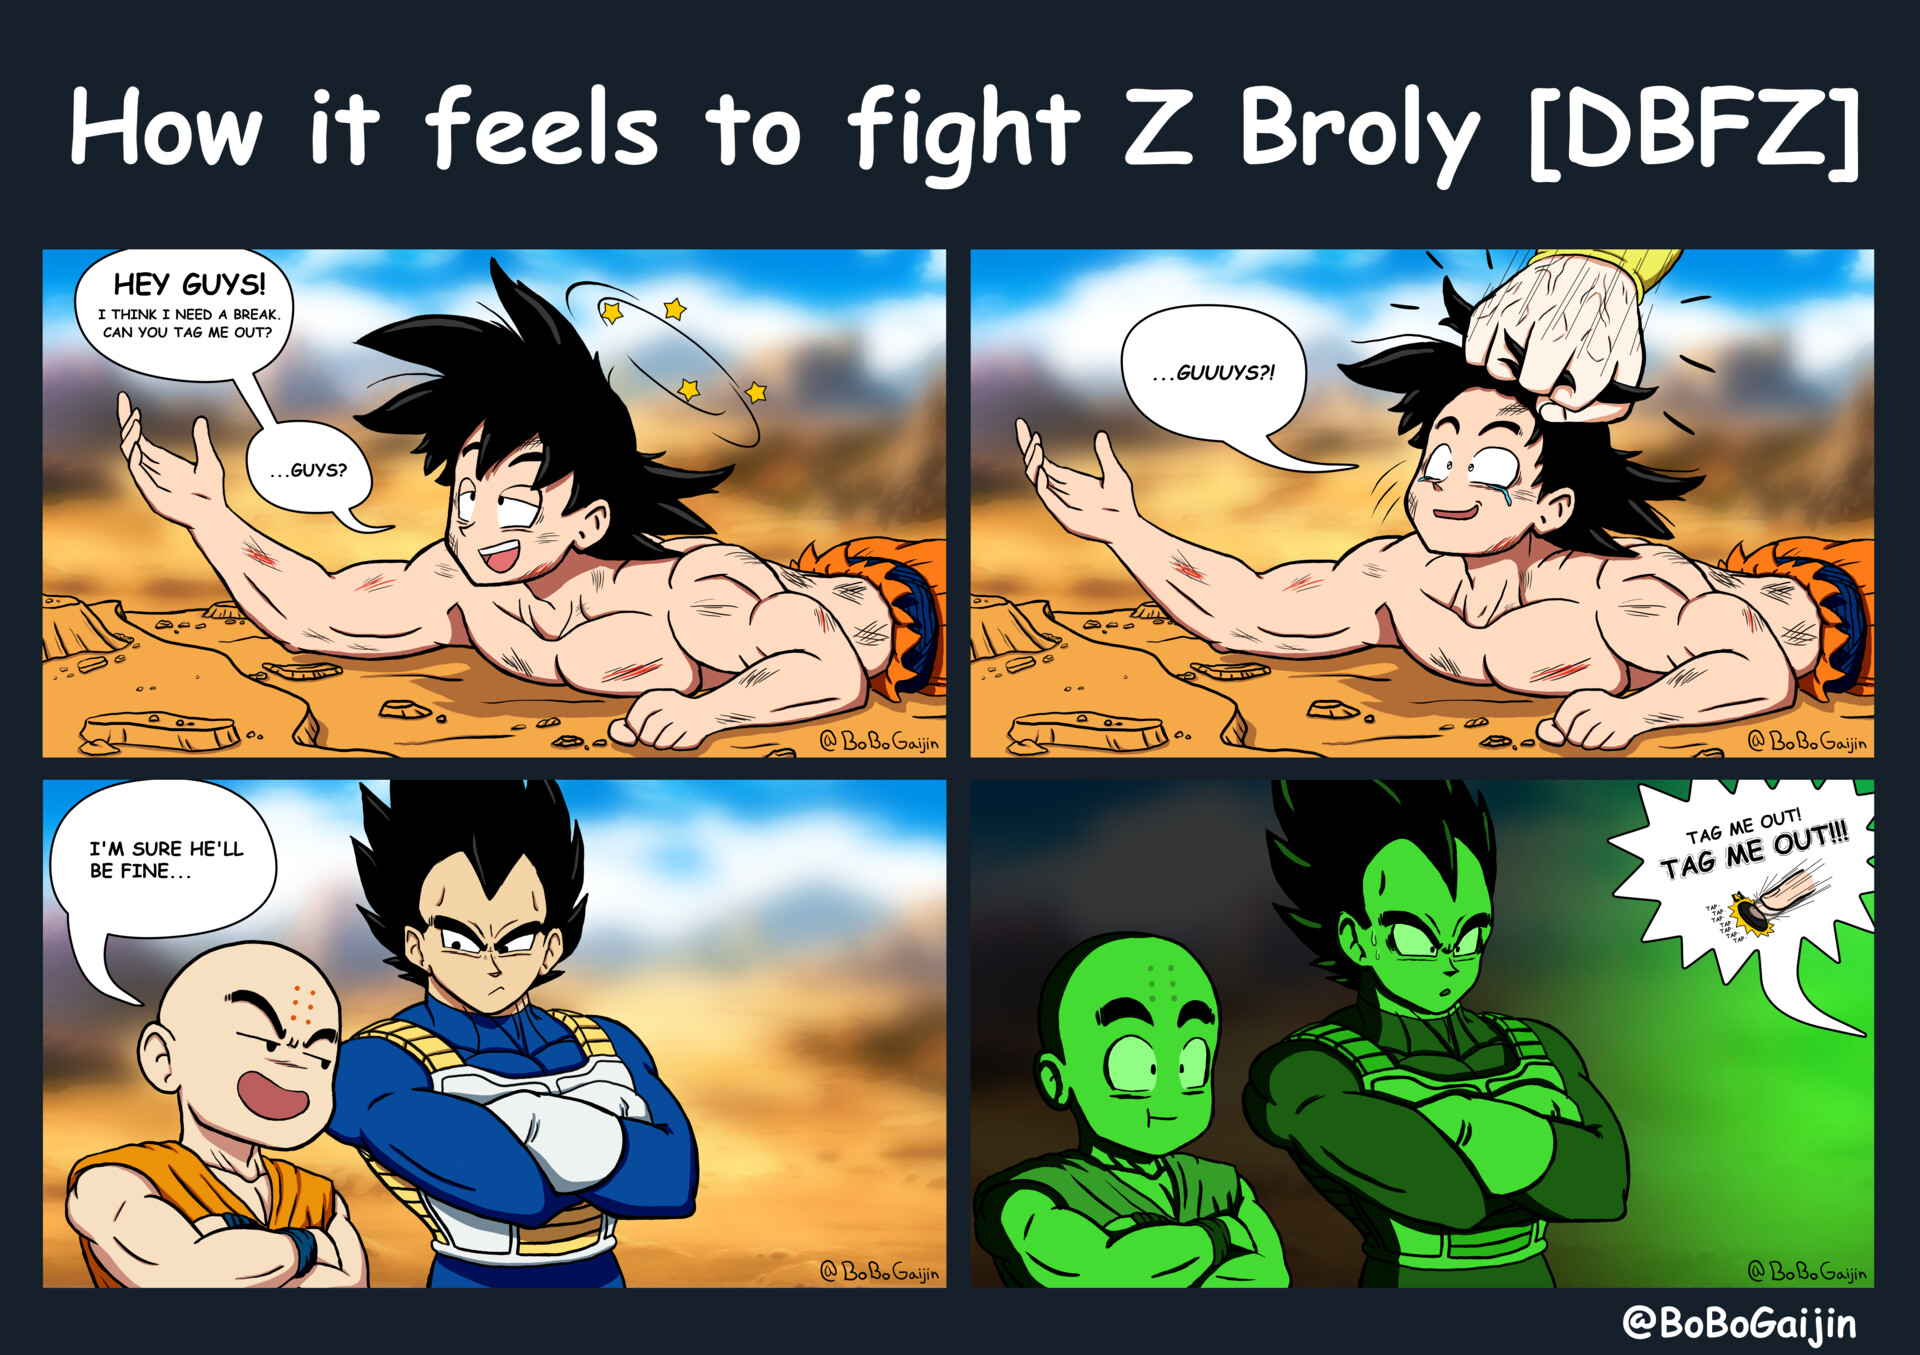 How it feels to fight Z Broly in DBFZ, BoBo Gaijin.